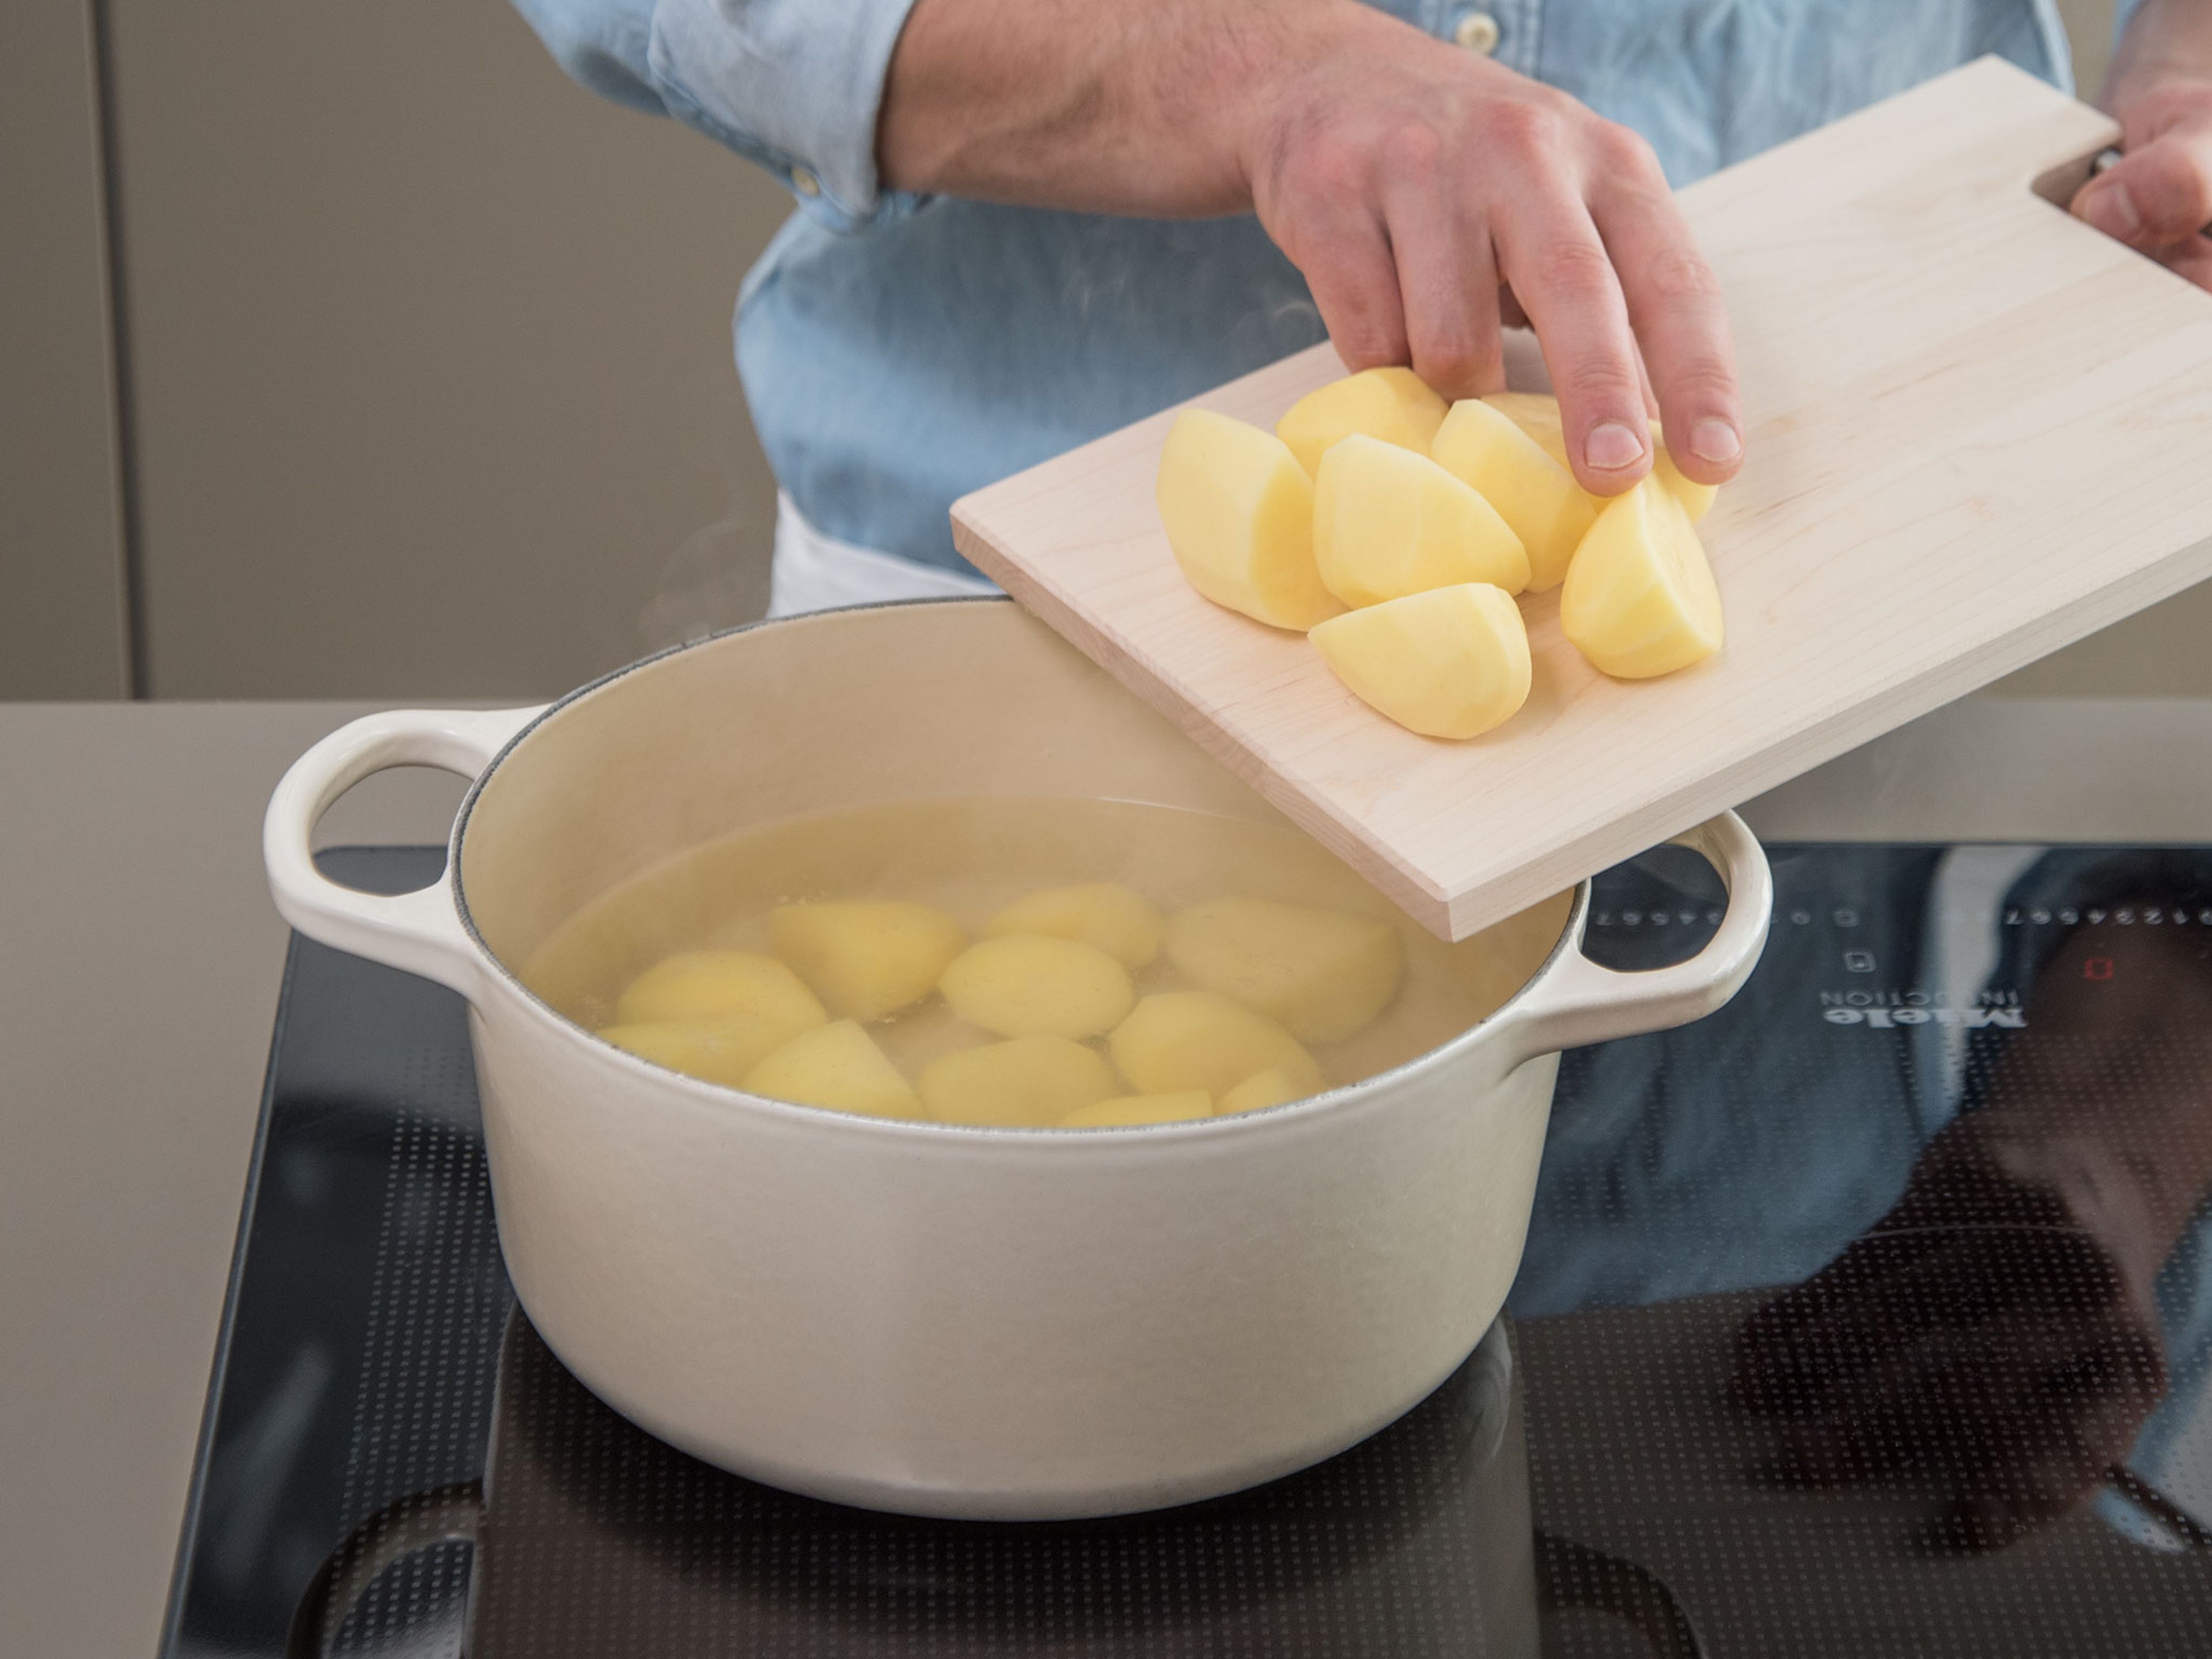 Kartoffeln schälen und vierteln. In einem großen Topf gesalzenes Wasser zum Kochen bringen. Kartoffeln in den Topf geben und ca. 20 Min. kochen, oder bis sie gar sind. Anschließend abgießen und warm halten.